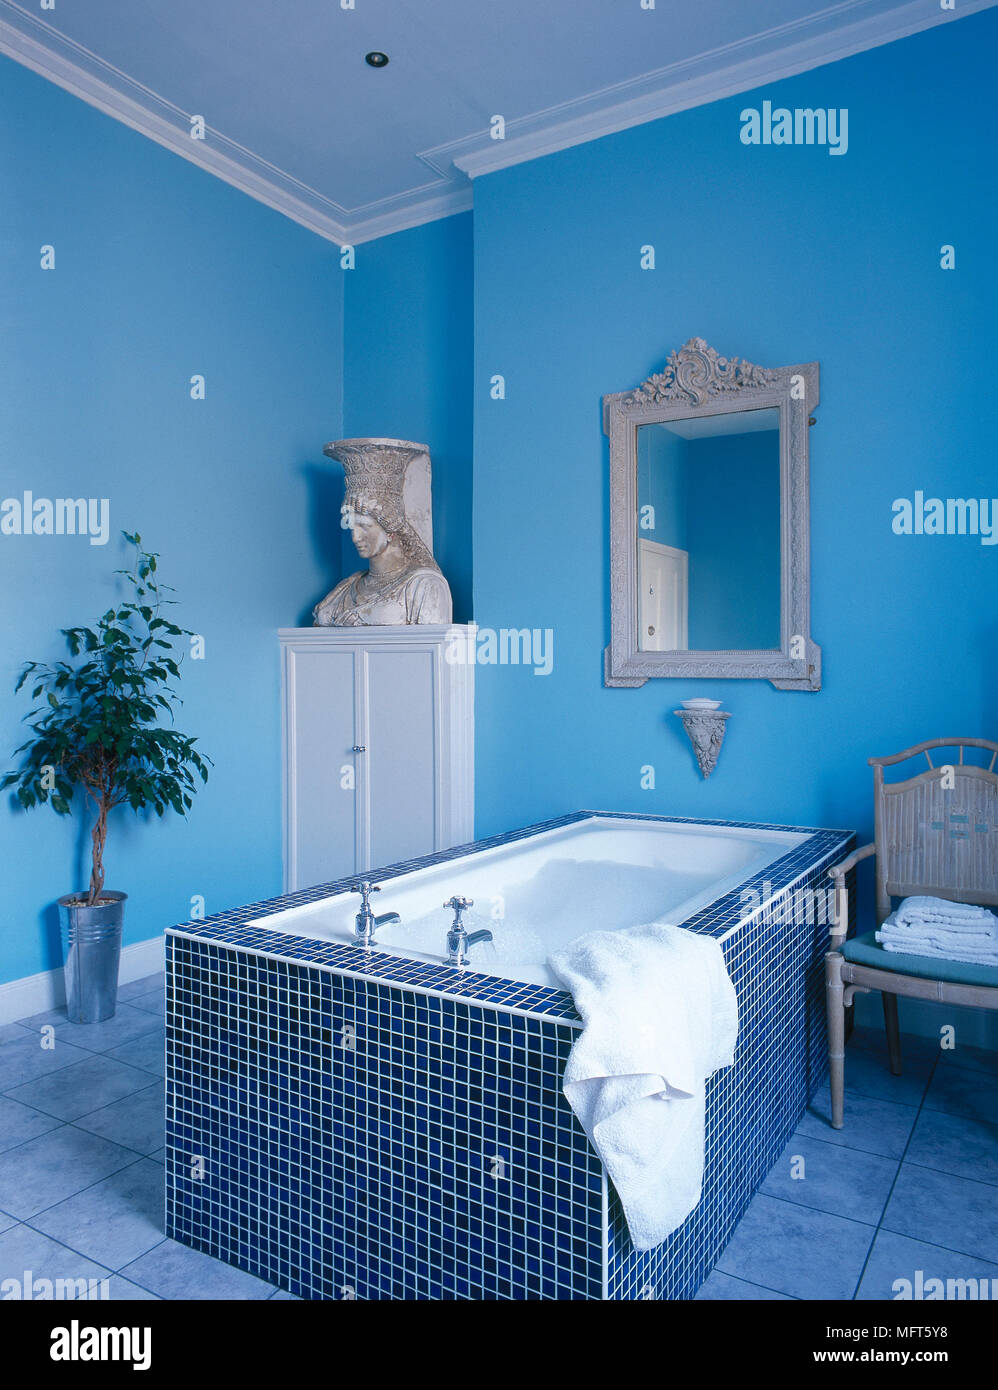 Un cuarto de baño moderno con paredes azules, baño con mosaicos de  azulejos, baldosas envolvente, alacena, busto Fotografía de stock - Alamy